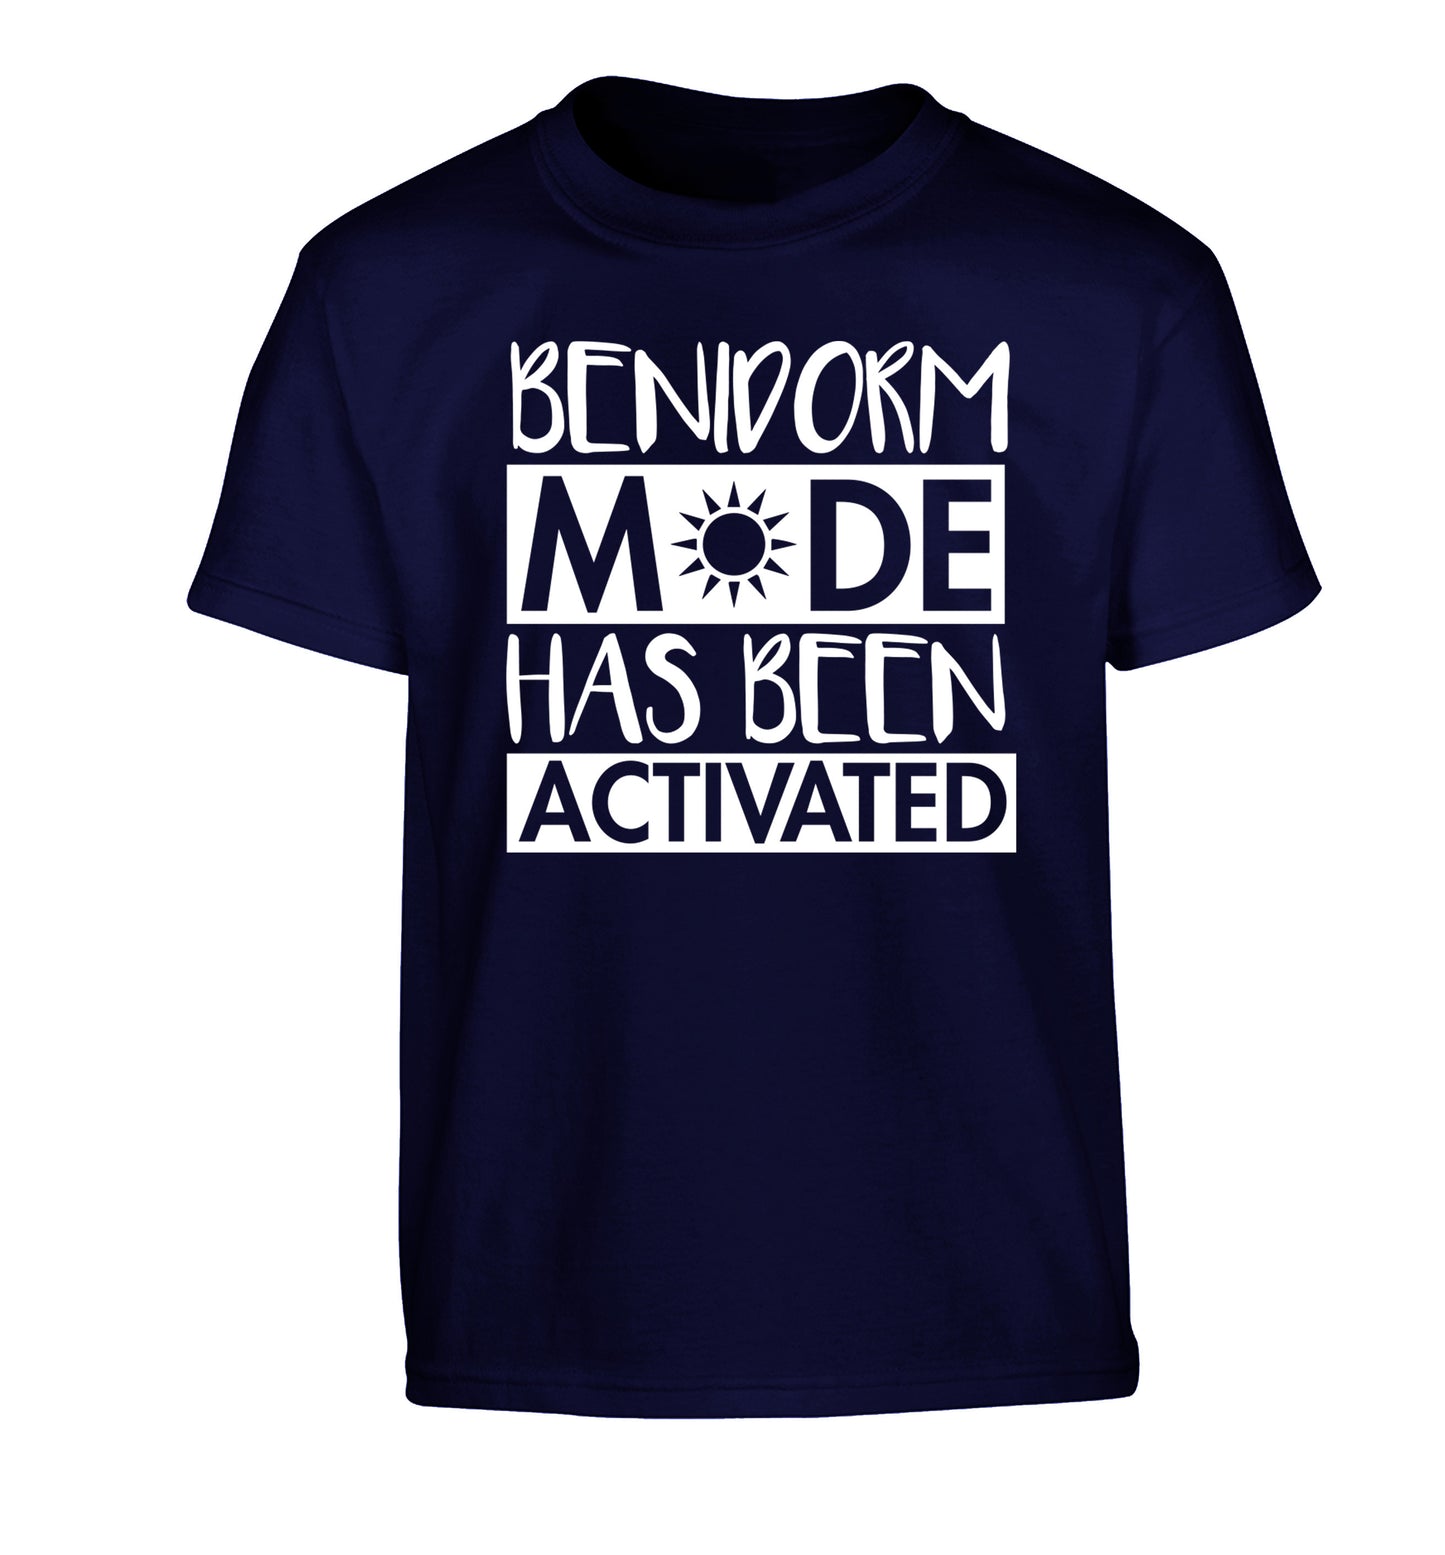 Benidorm mode has been activated Children's navy Tshirt 12-14 Years